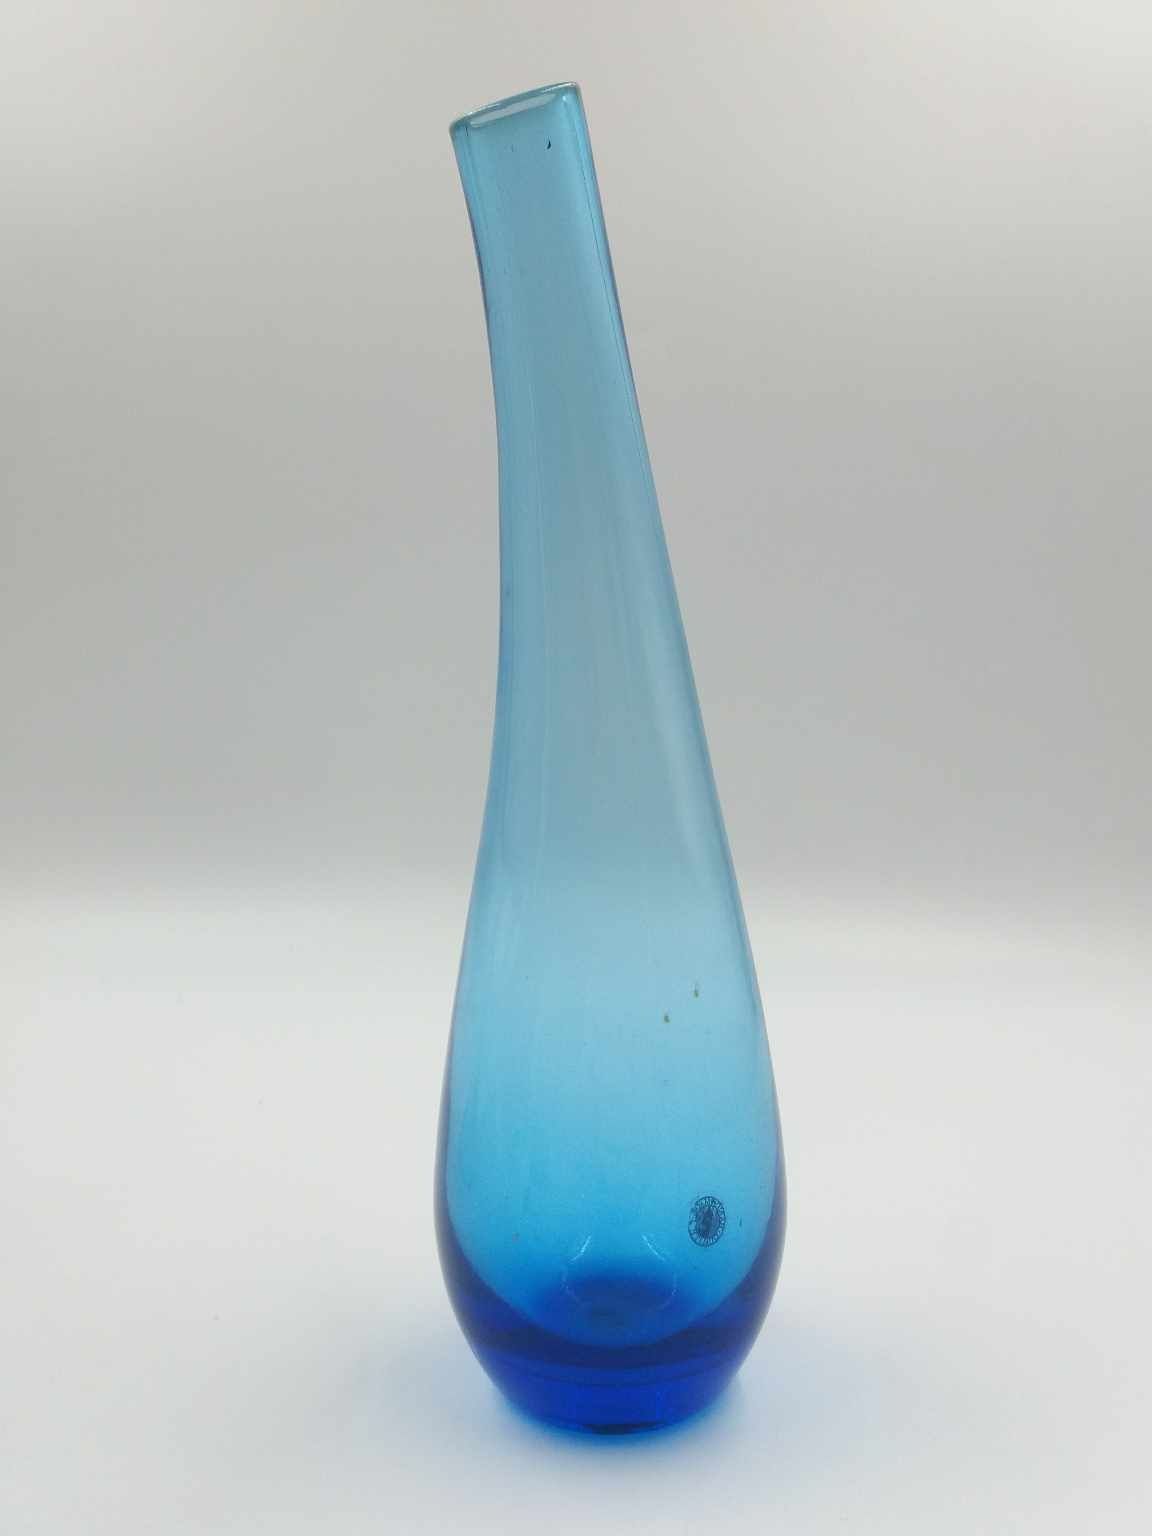 Ładny wysoki szklany ręcznie wykonany wazon w niebieskim kolorze